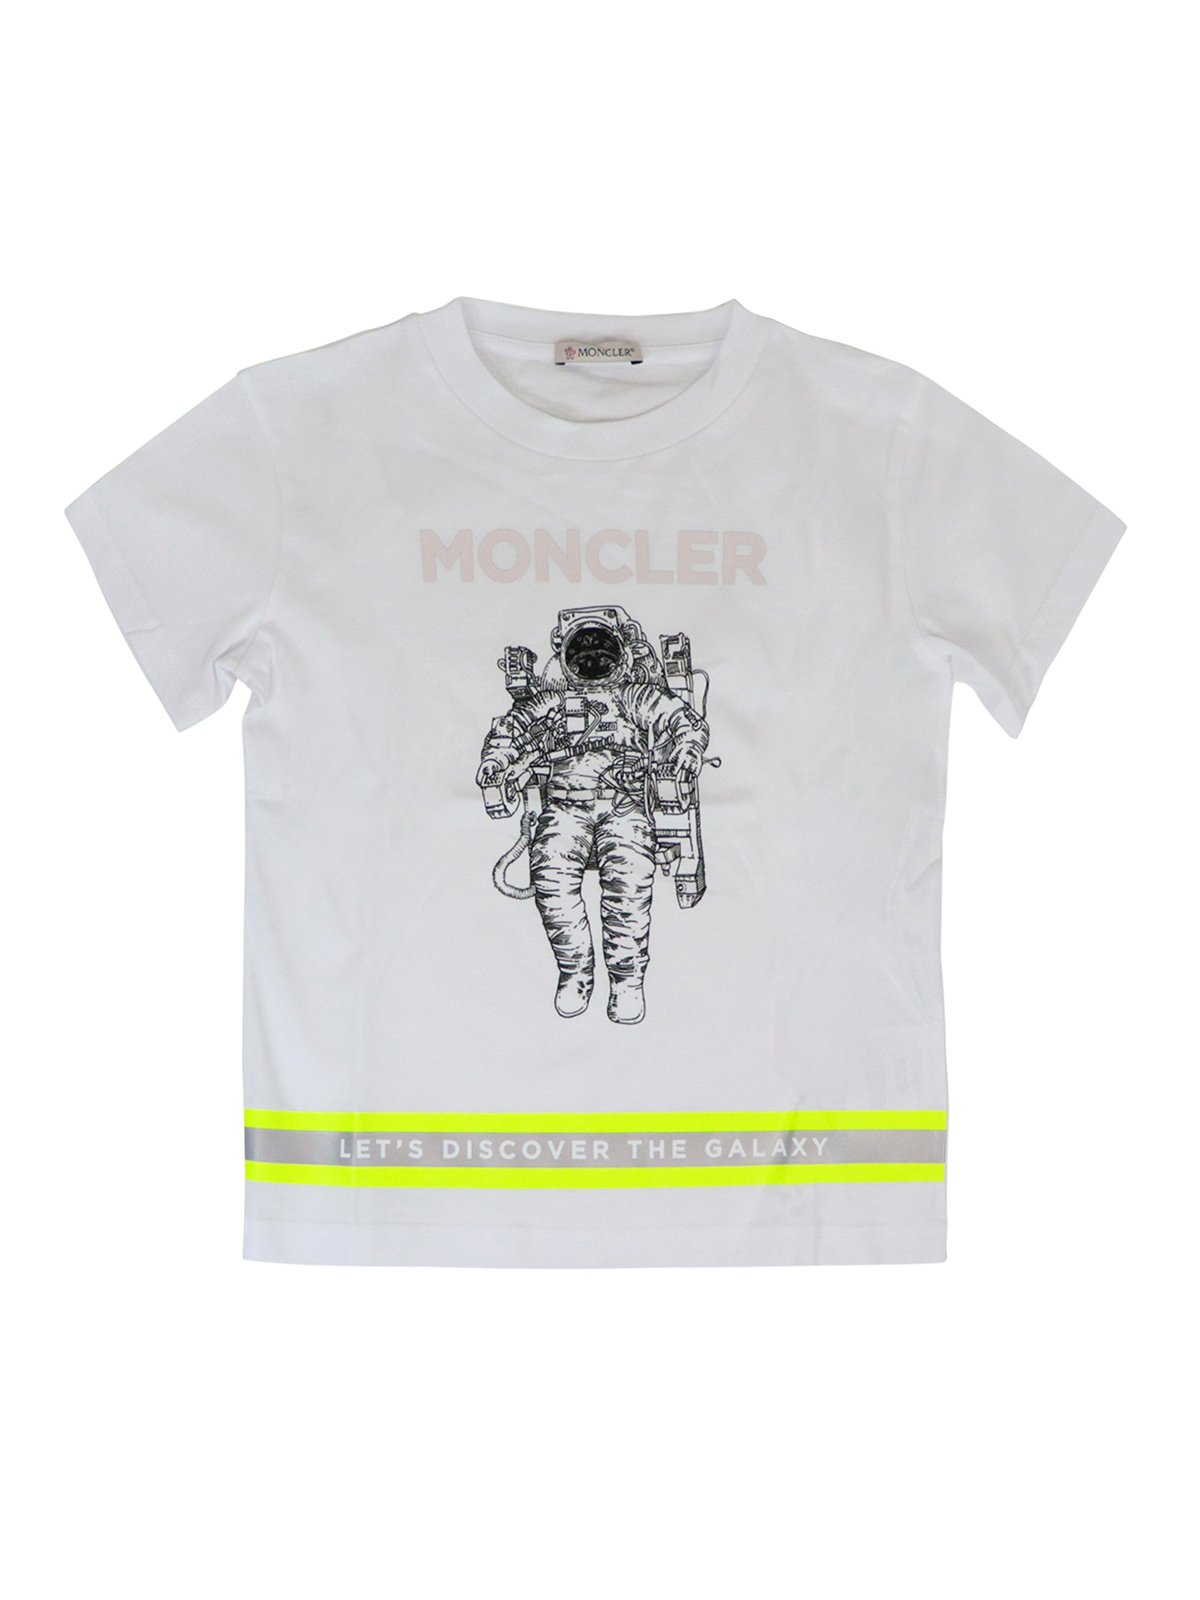 Louis Vuitton astronaut Tshirt